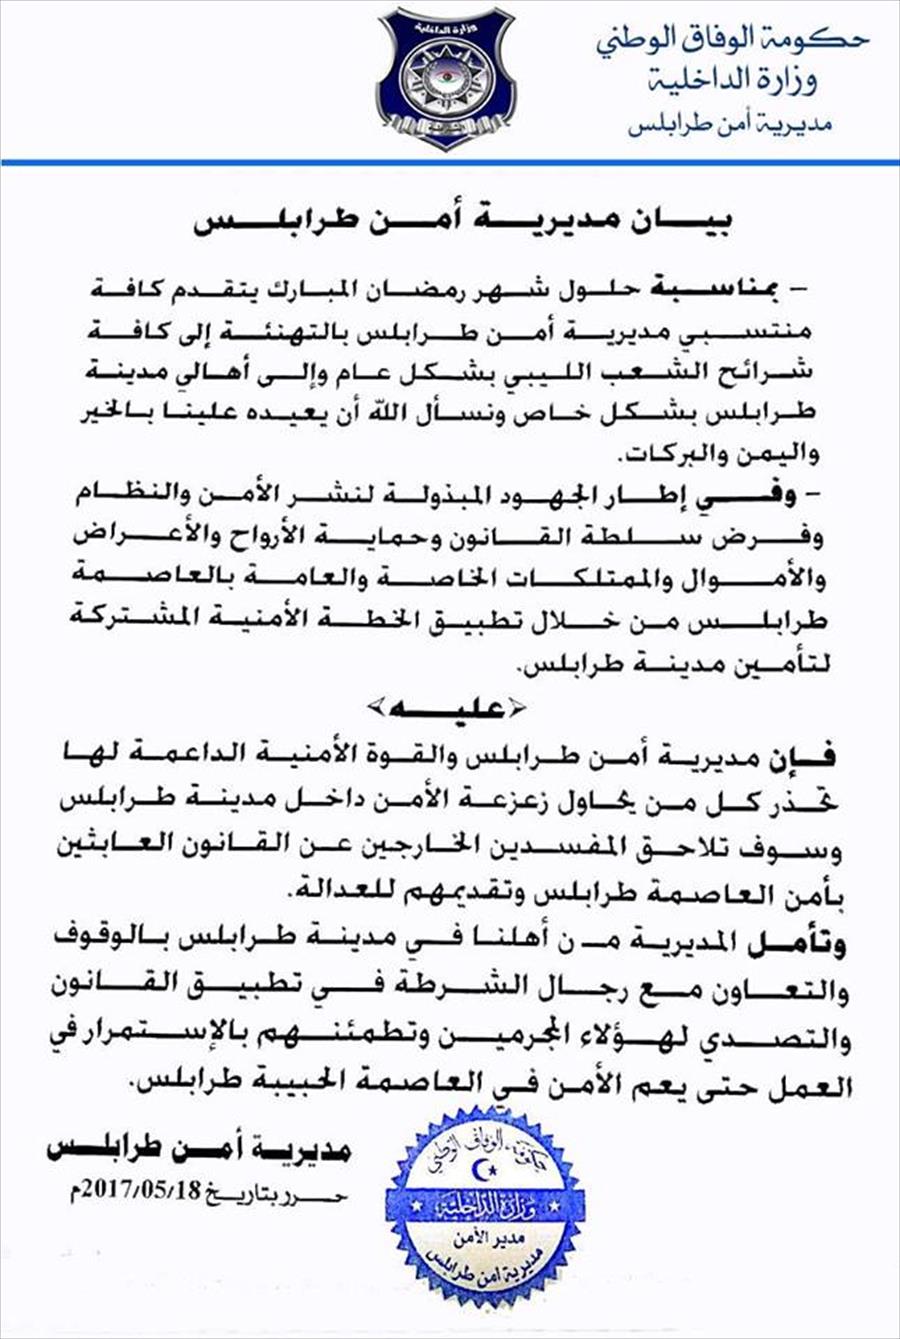 مديرية طرابلس تحذر من زعزعة الأمن في شهر رمضان